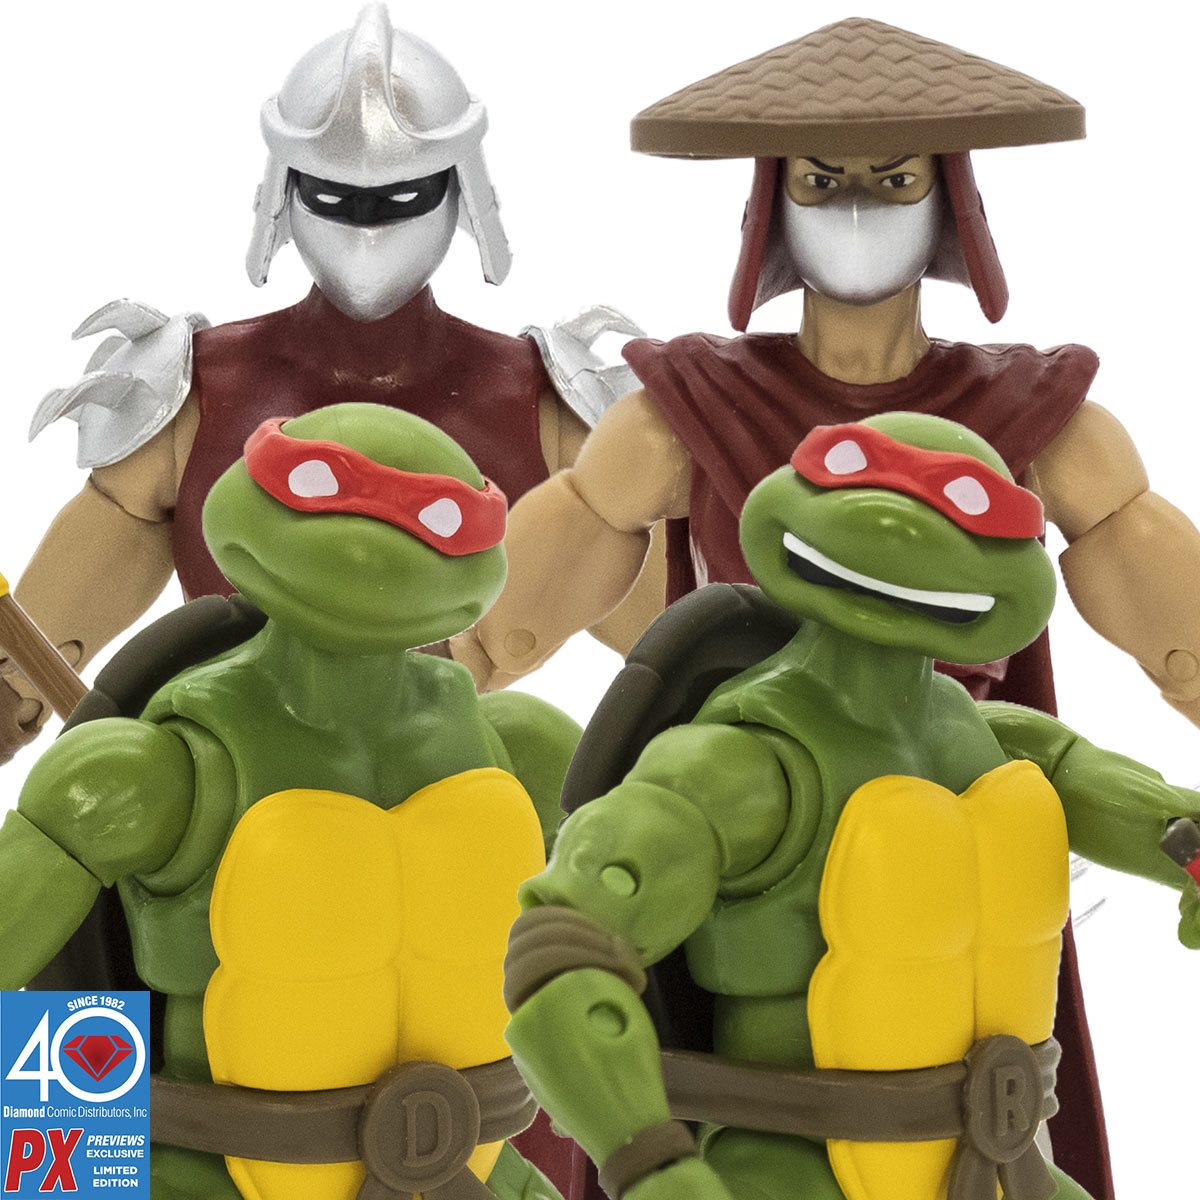 Teenage Mutant Ninja Turtles TMNT Shredder - The Loyal Subjects